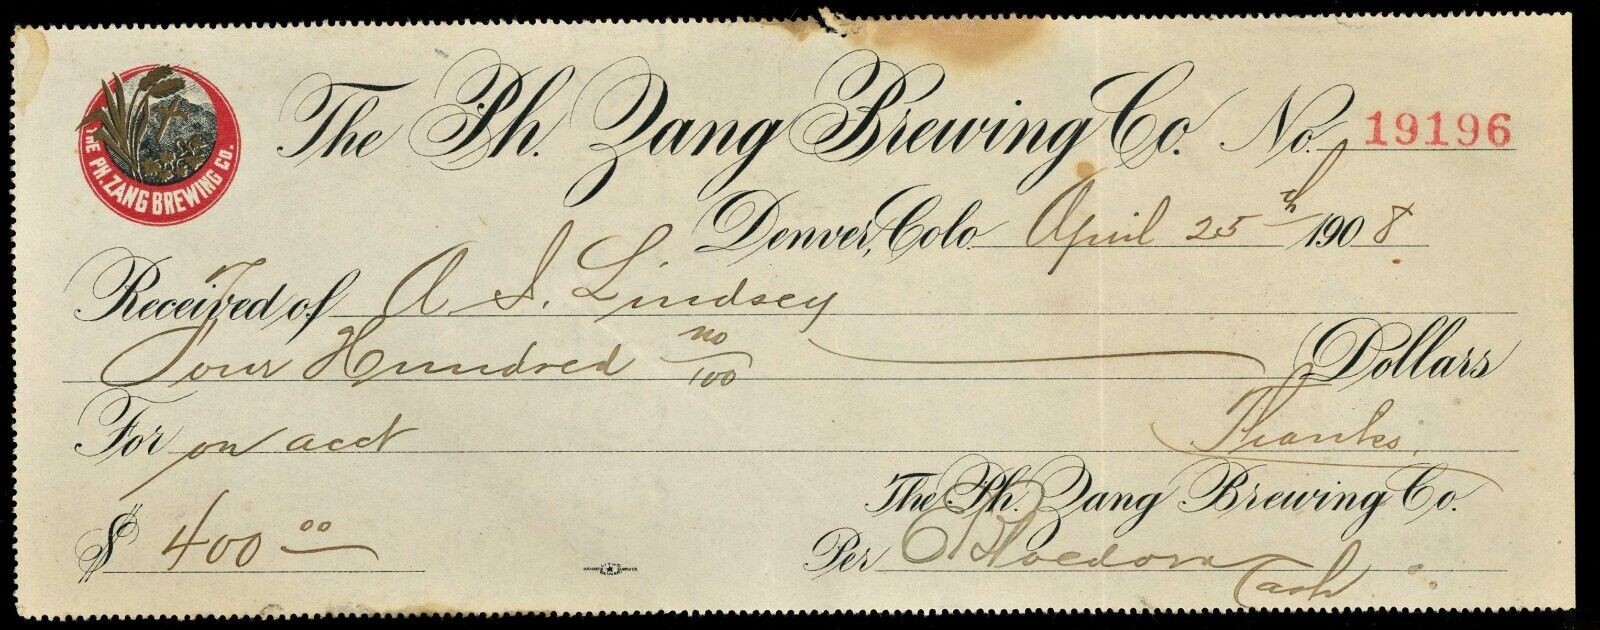 1908 ZANG BREWING BANK CHECK Pre Prohibition Denver Colorado